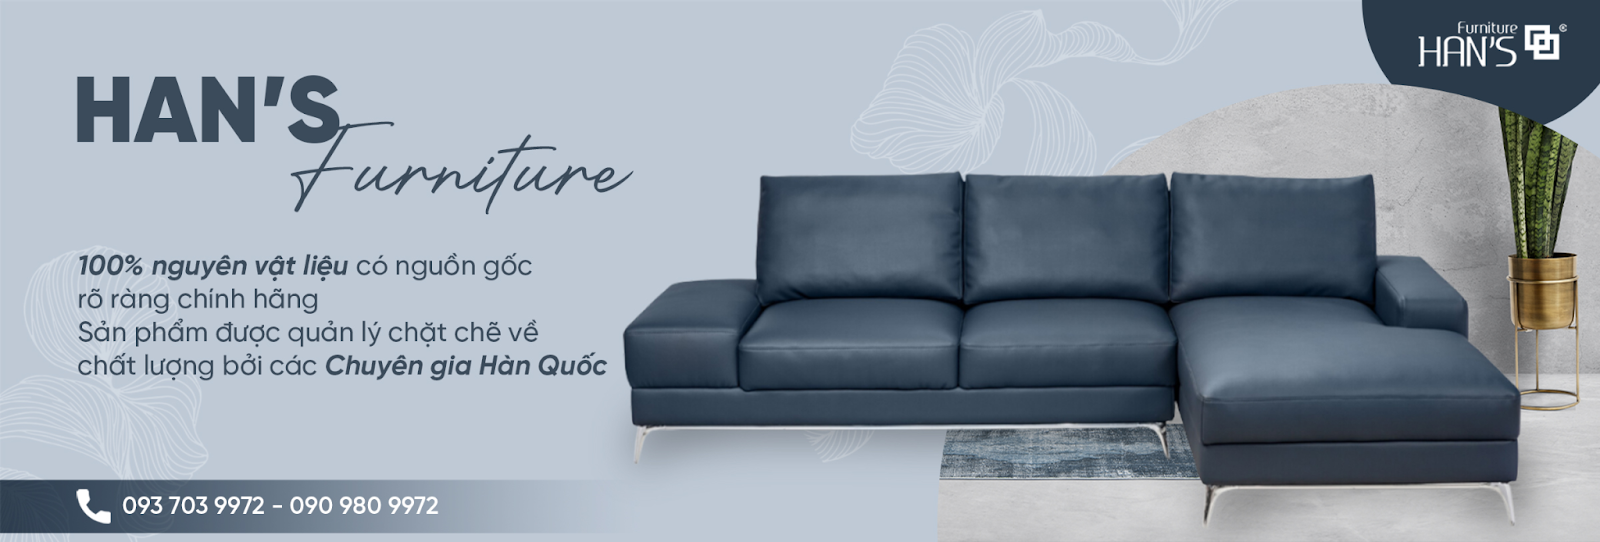 Han’s Furniture- Địa chỉ cung cấp những sản phẩm bàn ghế sofa chất lượng theo phong cách Hàn Quốc